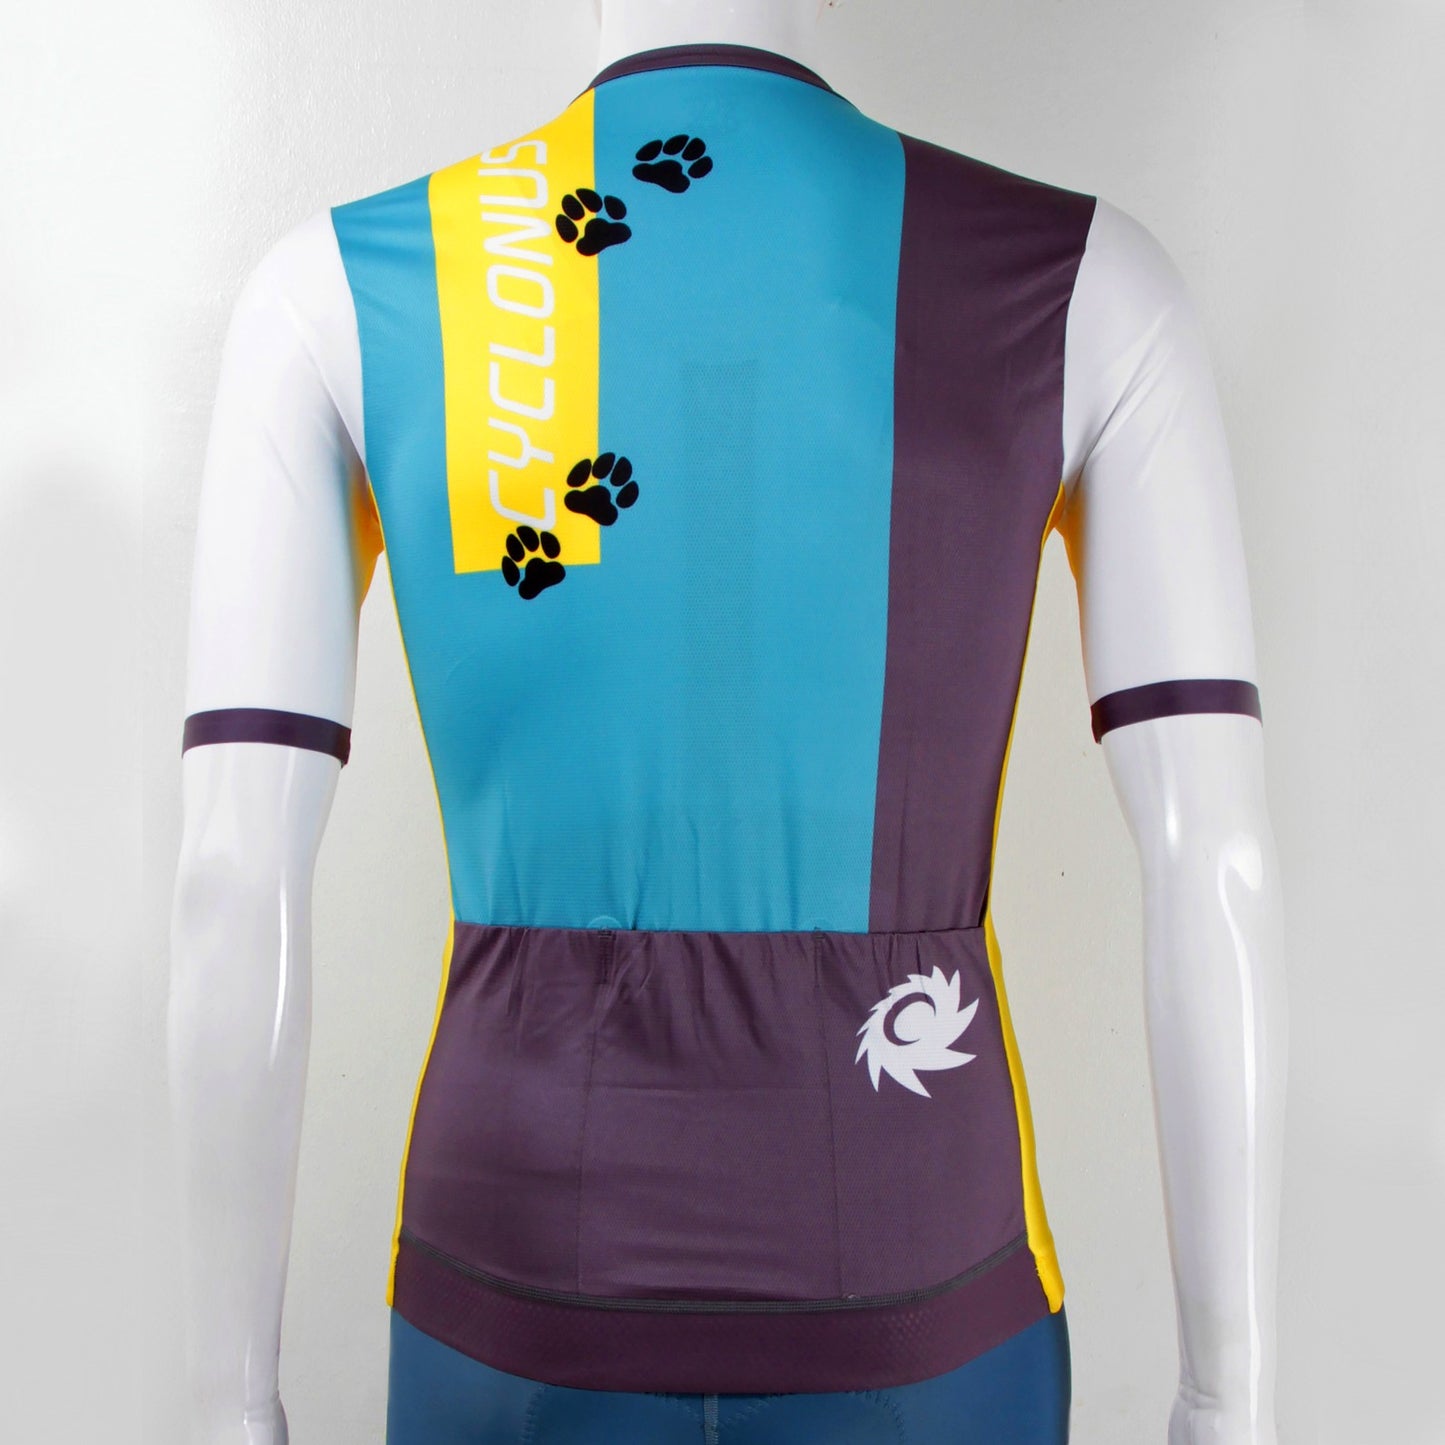 Cyclonus Stomp Cycling Jersey - Dog Design